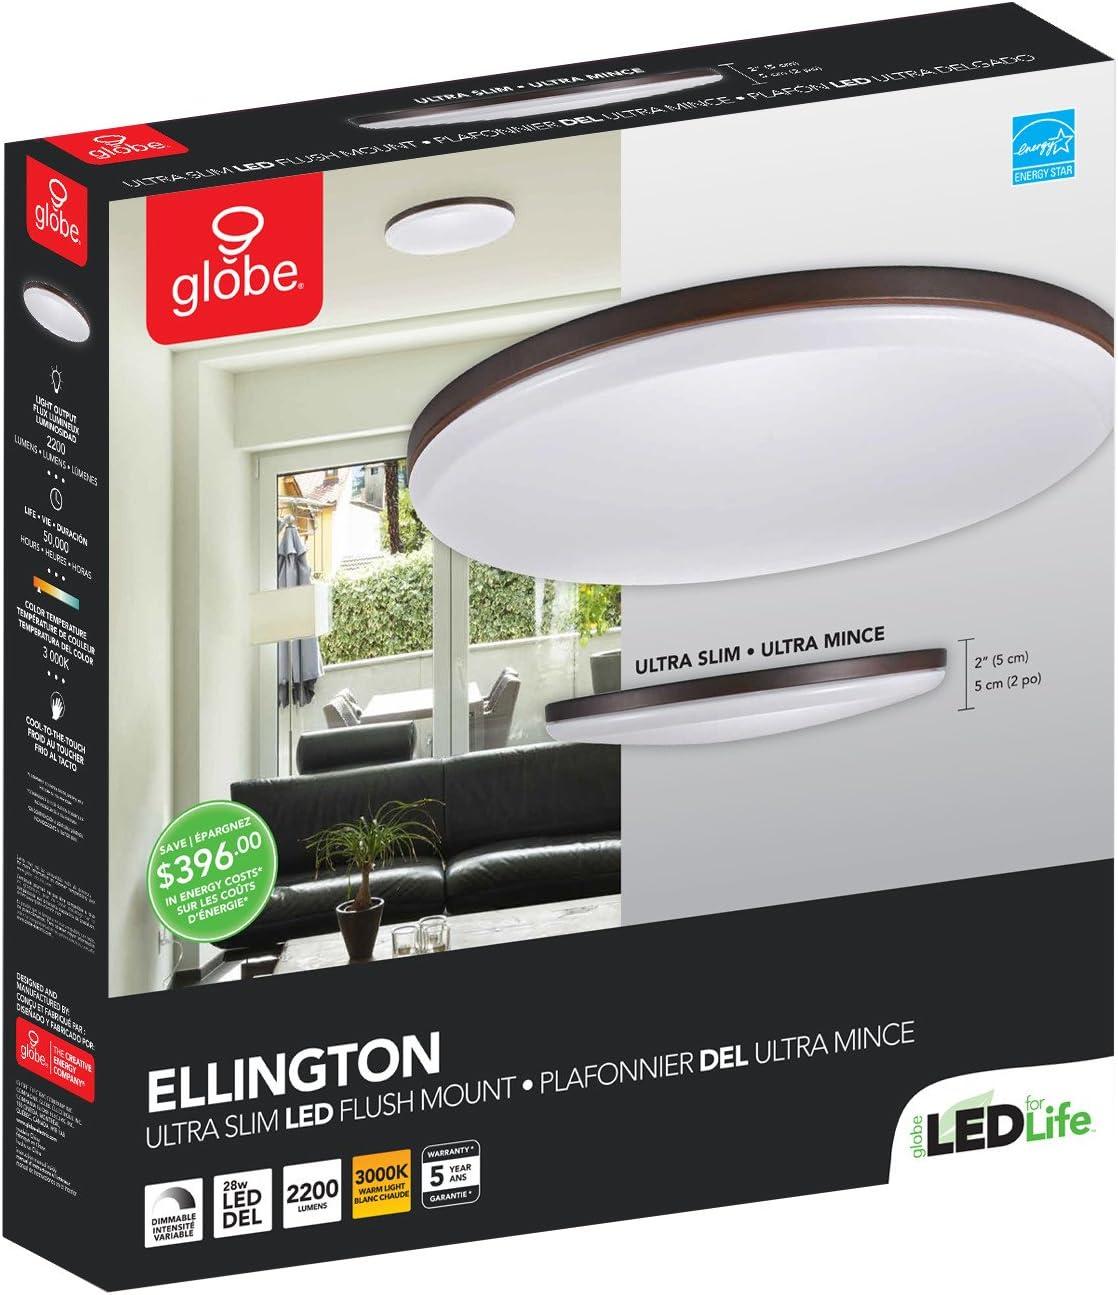 Ellington Dark Bronze Ultra Slim LED Flush Mount Ceiling Light